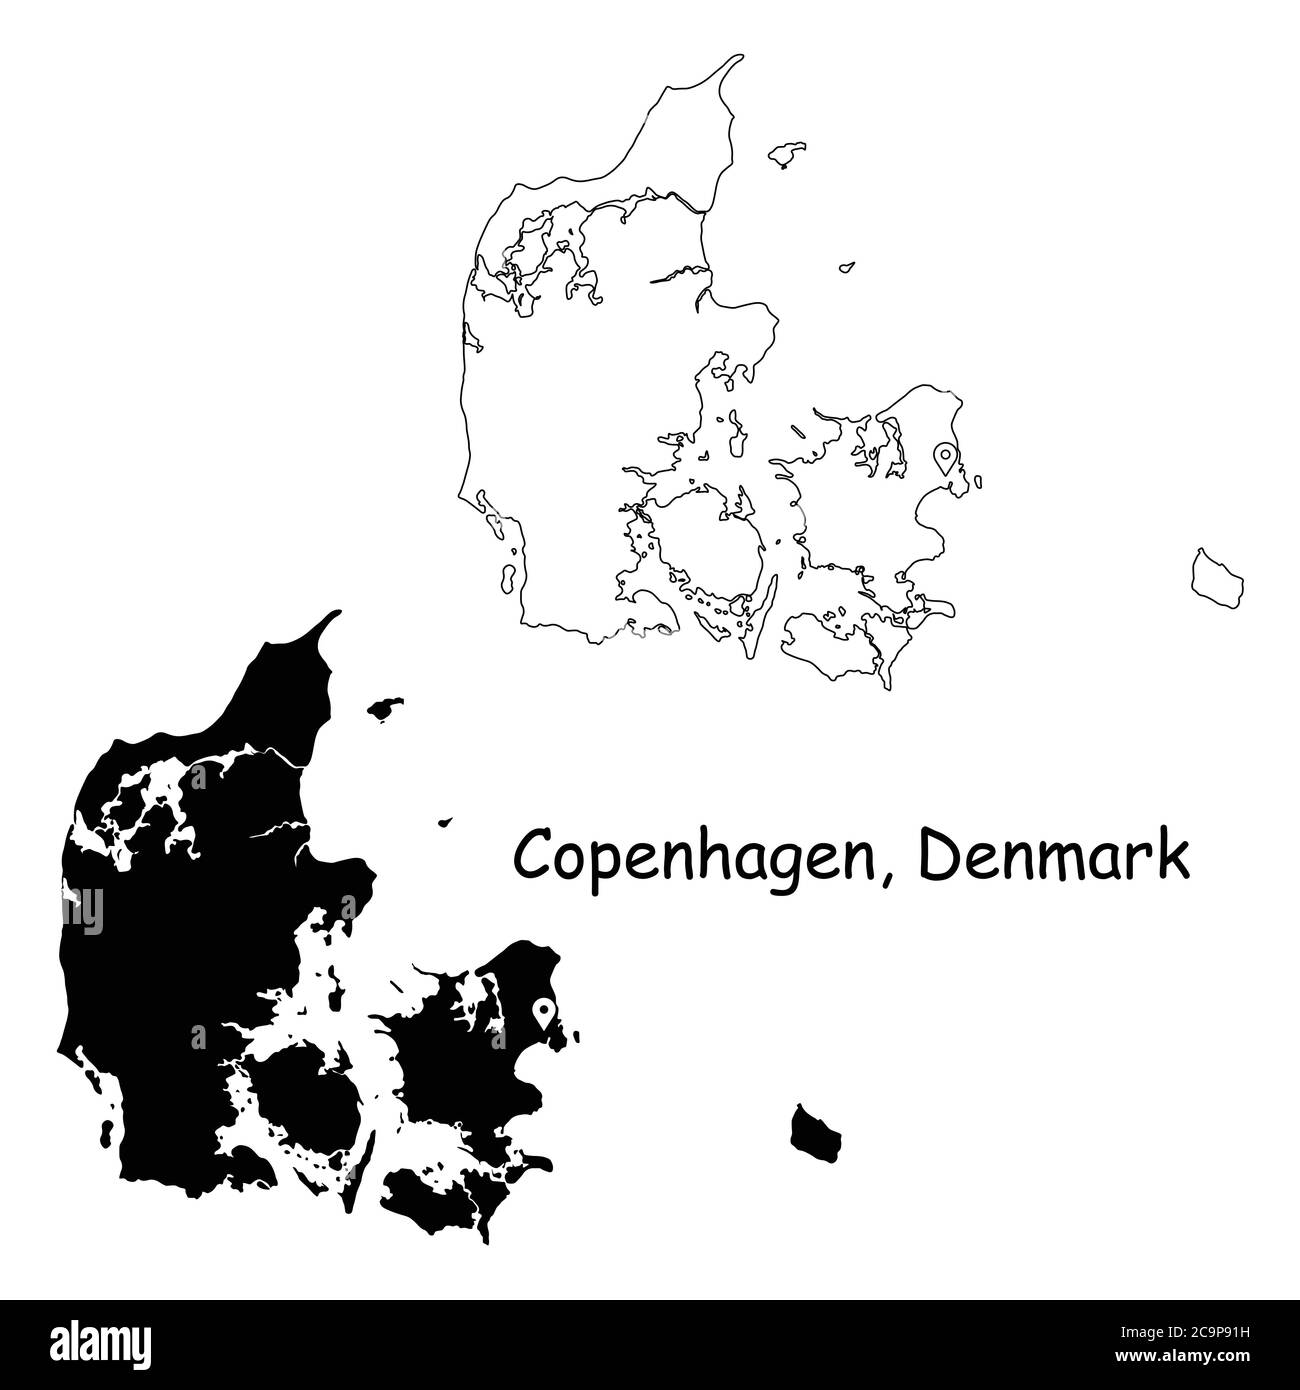 Copenaghen Danimarca. Mappa dettagliata del Paese con il pin della posizione sulla città capitale. Silhouette nera e mappe di contorno isolate su sfondo bianco. Vettore EPS Illustrazione Vettoriale